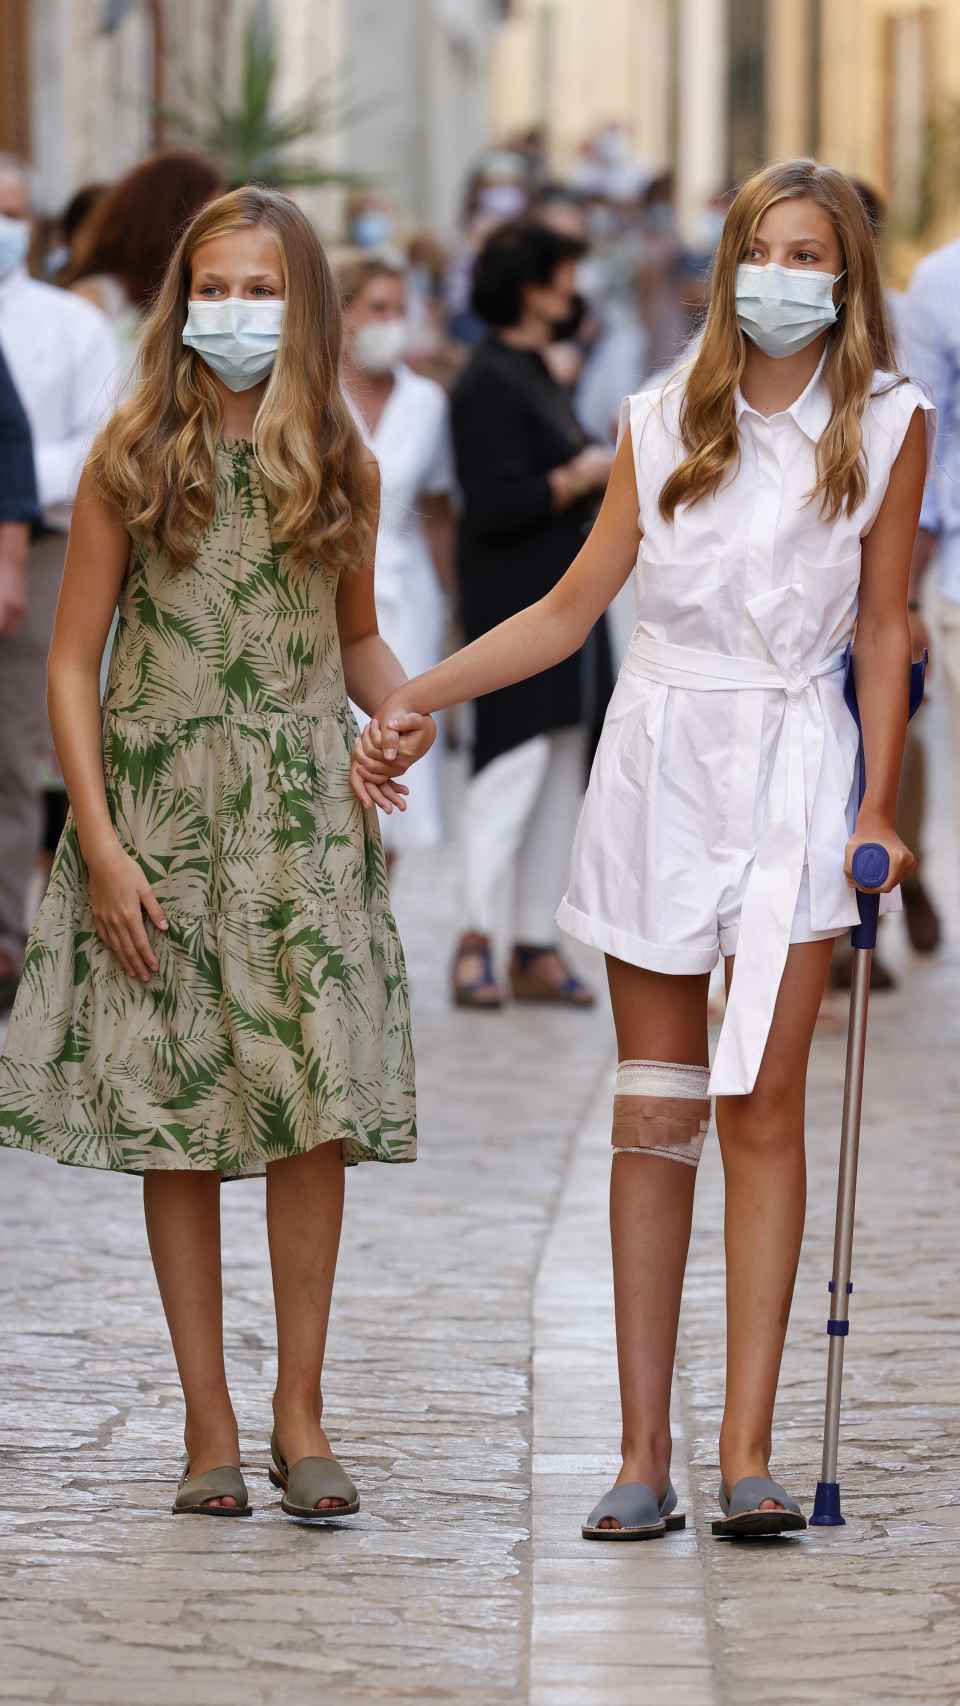 La princesa Leonor ayuda a caminar a su hermana Sofía porque tiene cinco puntos de sutura en la rodilla.